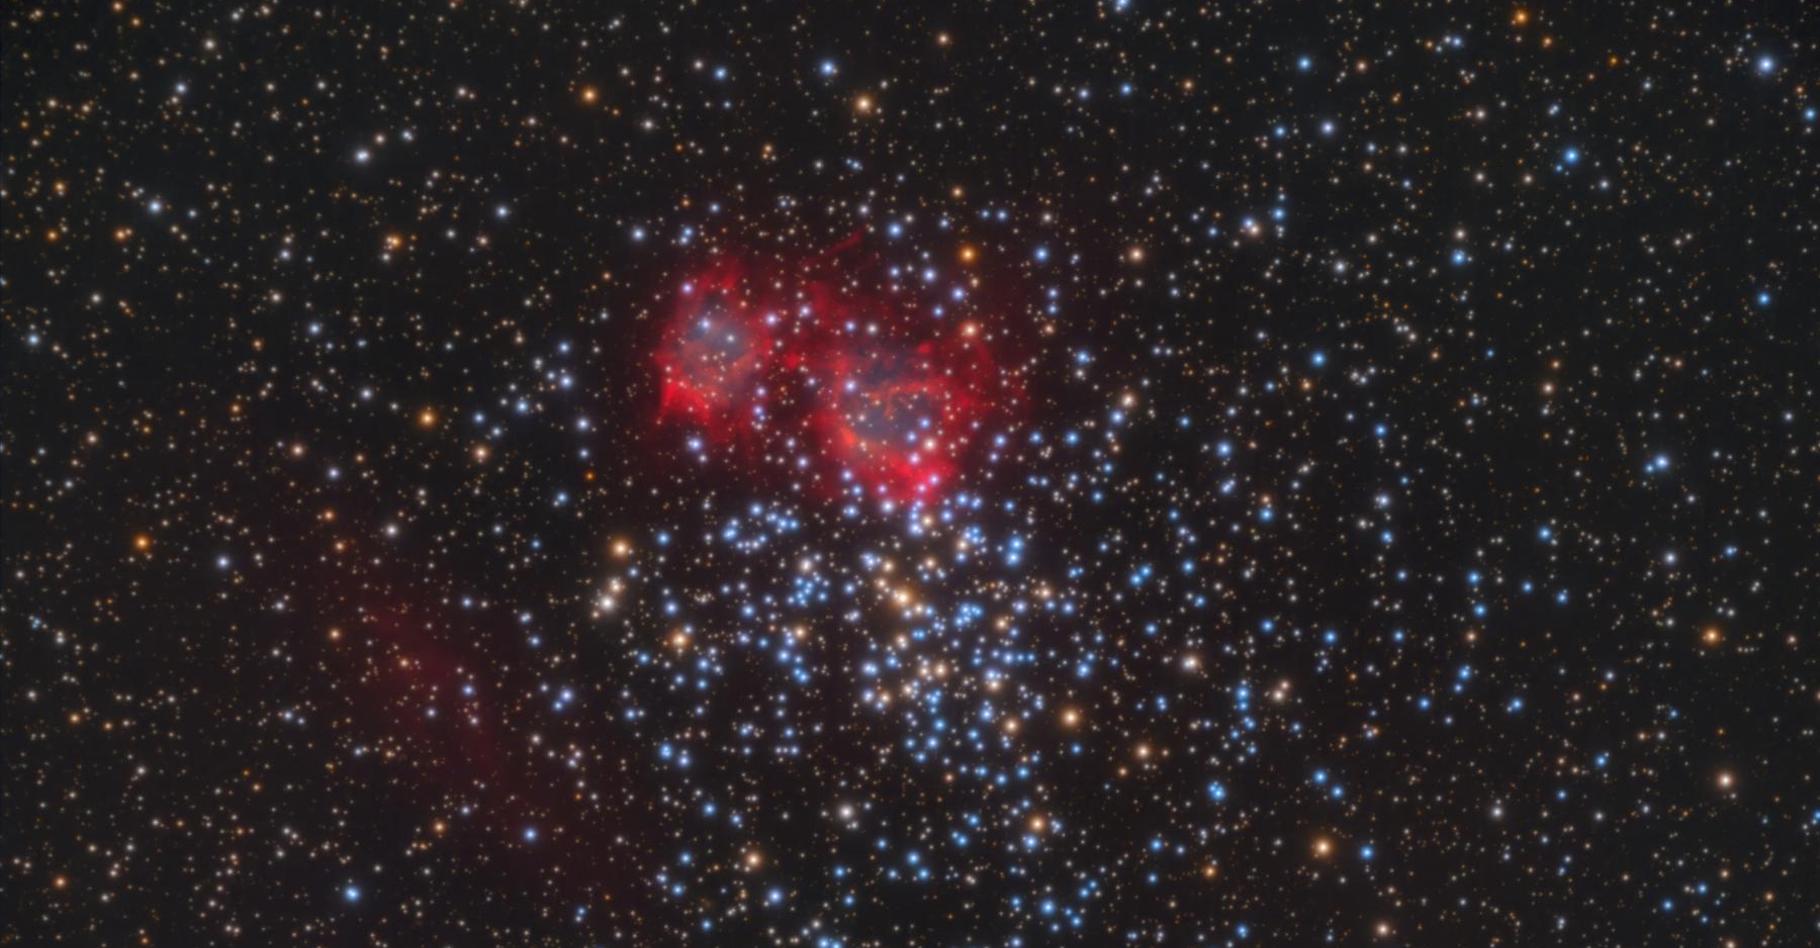 Des chercheurs de l’université de Tübingen (Allemagne) ont étudié l’étoile centrale de cette nébuleuse planétaire dans l’amas ouvert M37. © Université de Tübingen